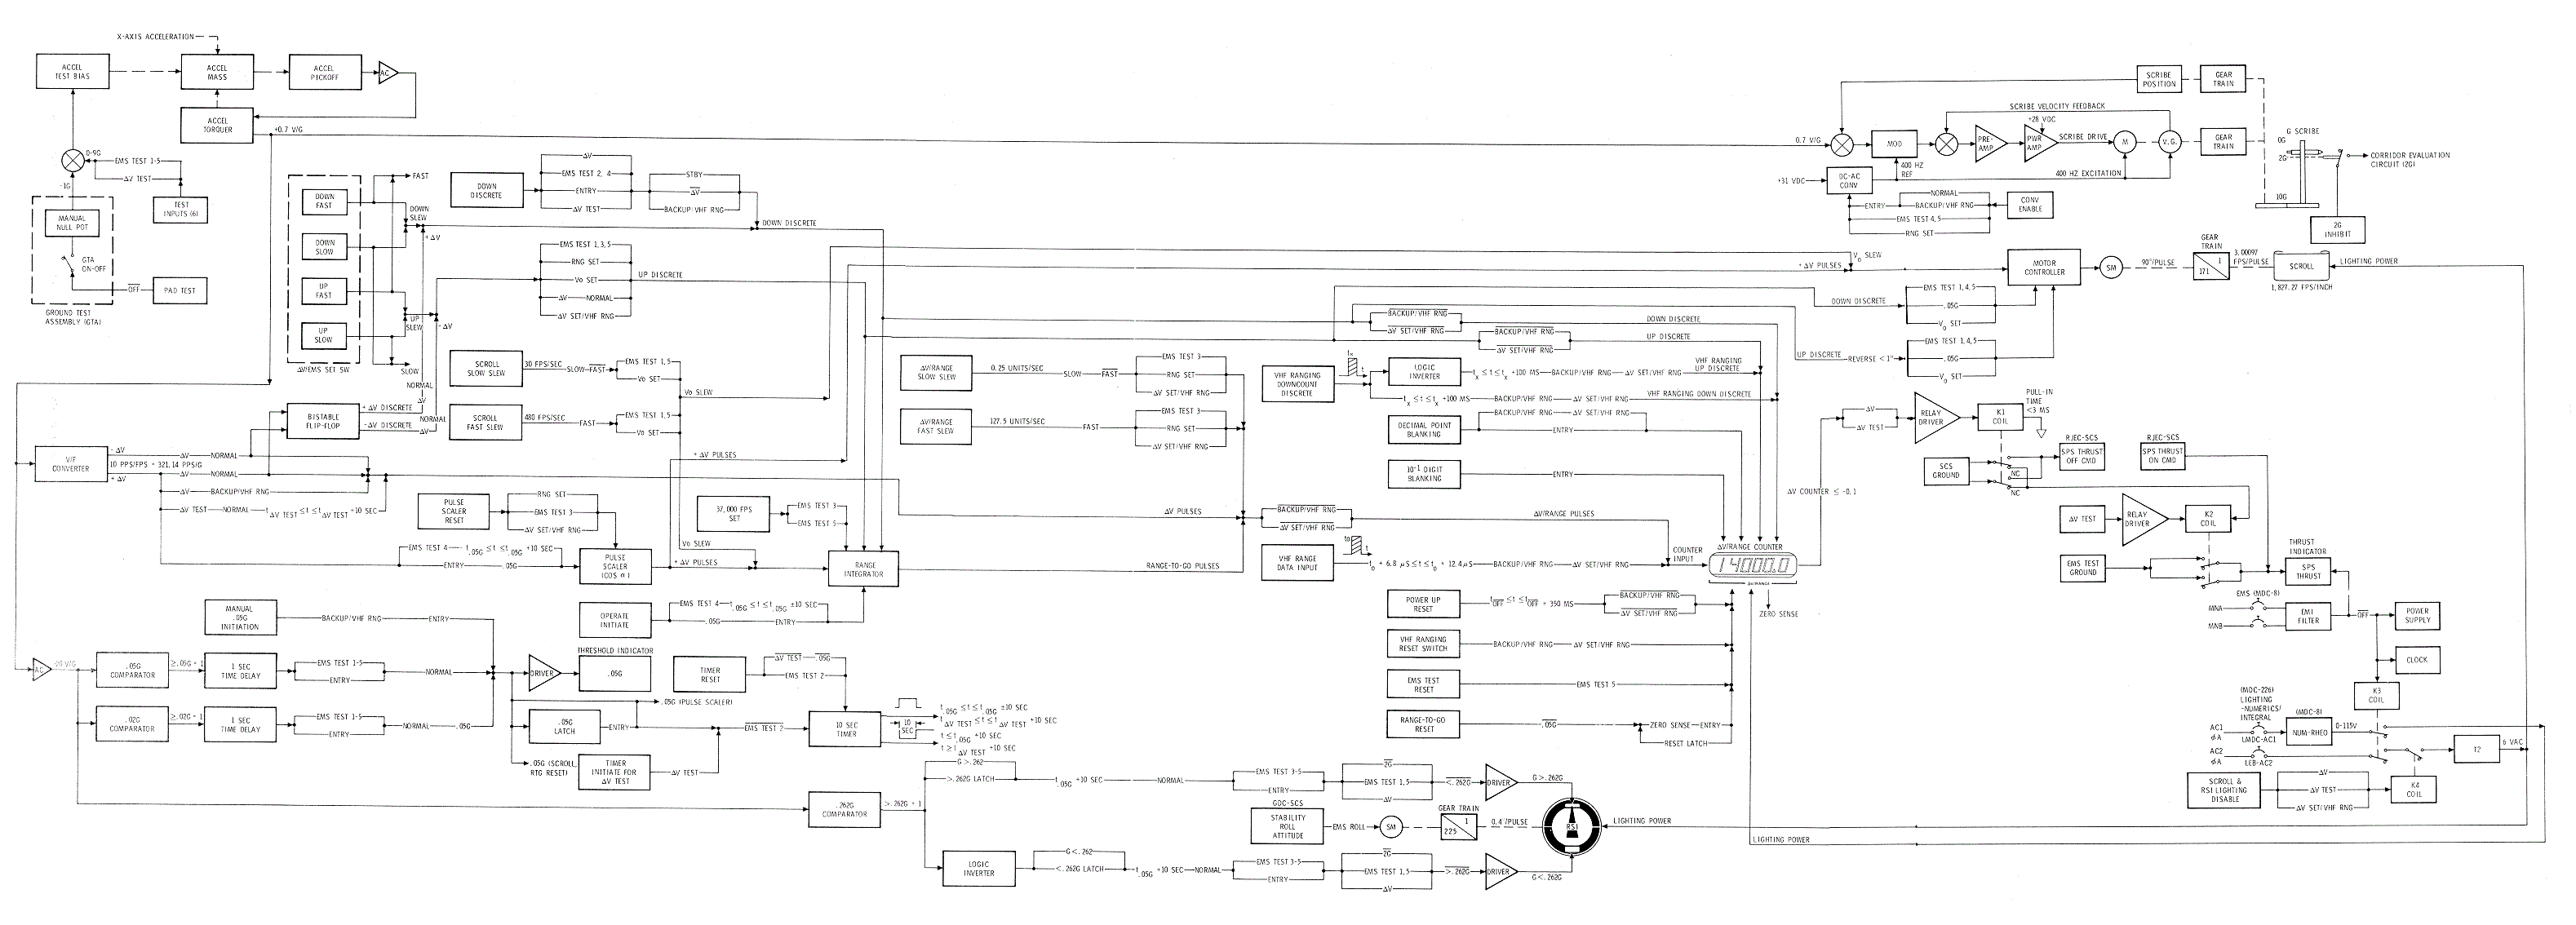 EMS Functional Block Diagram 